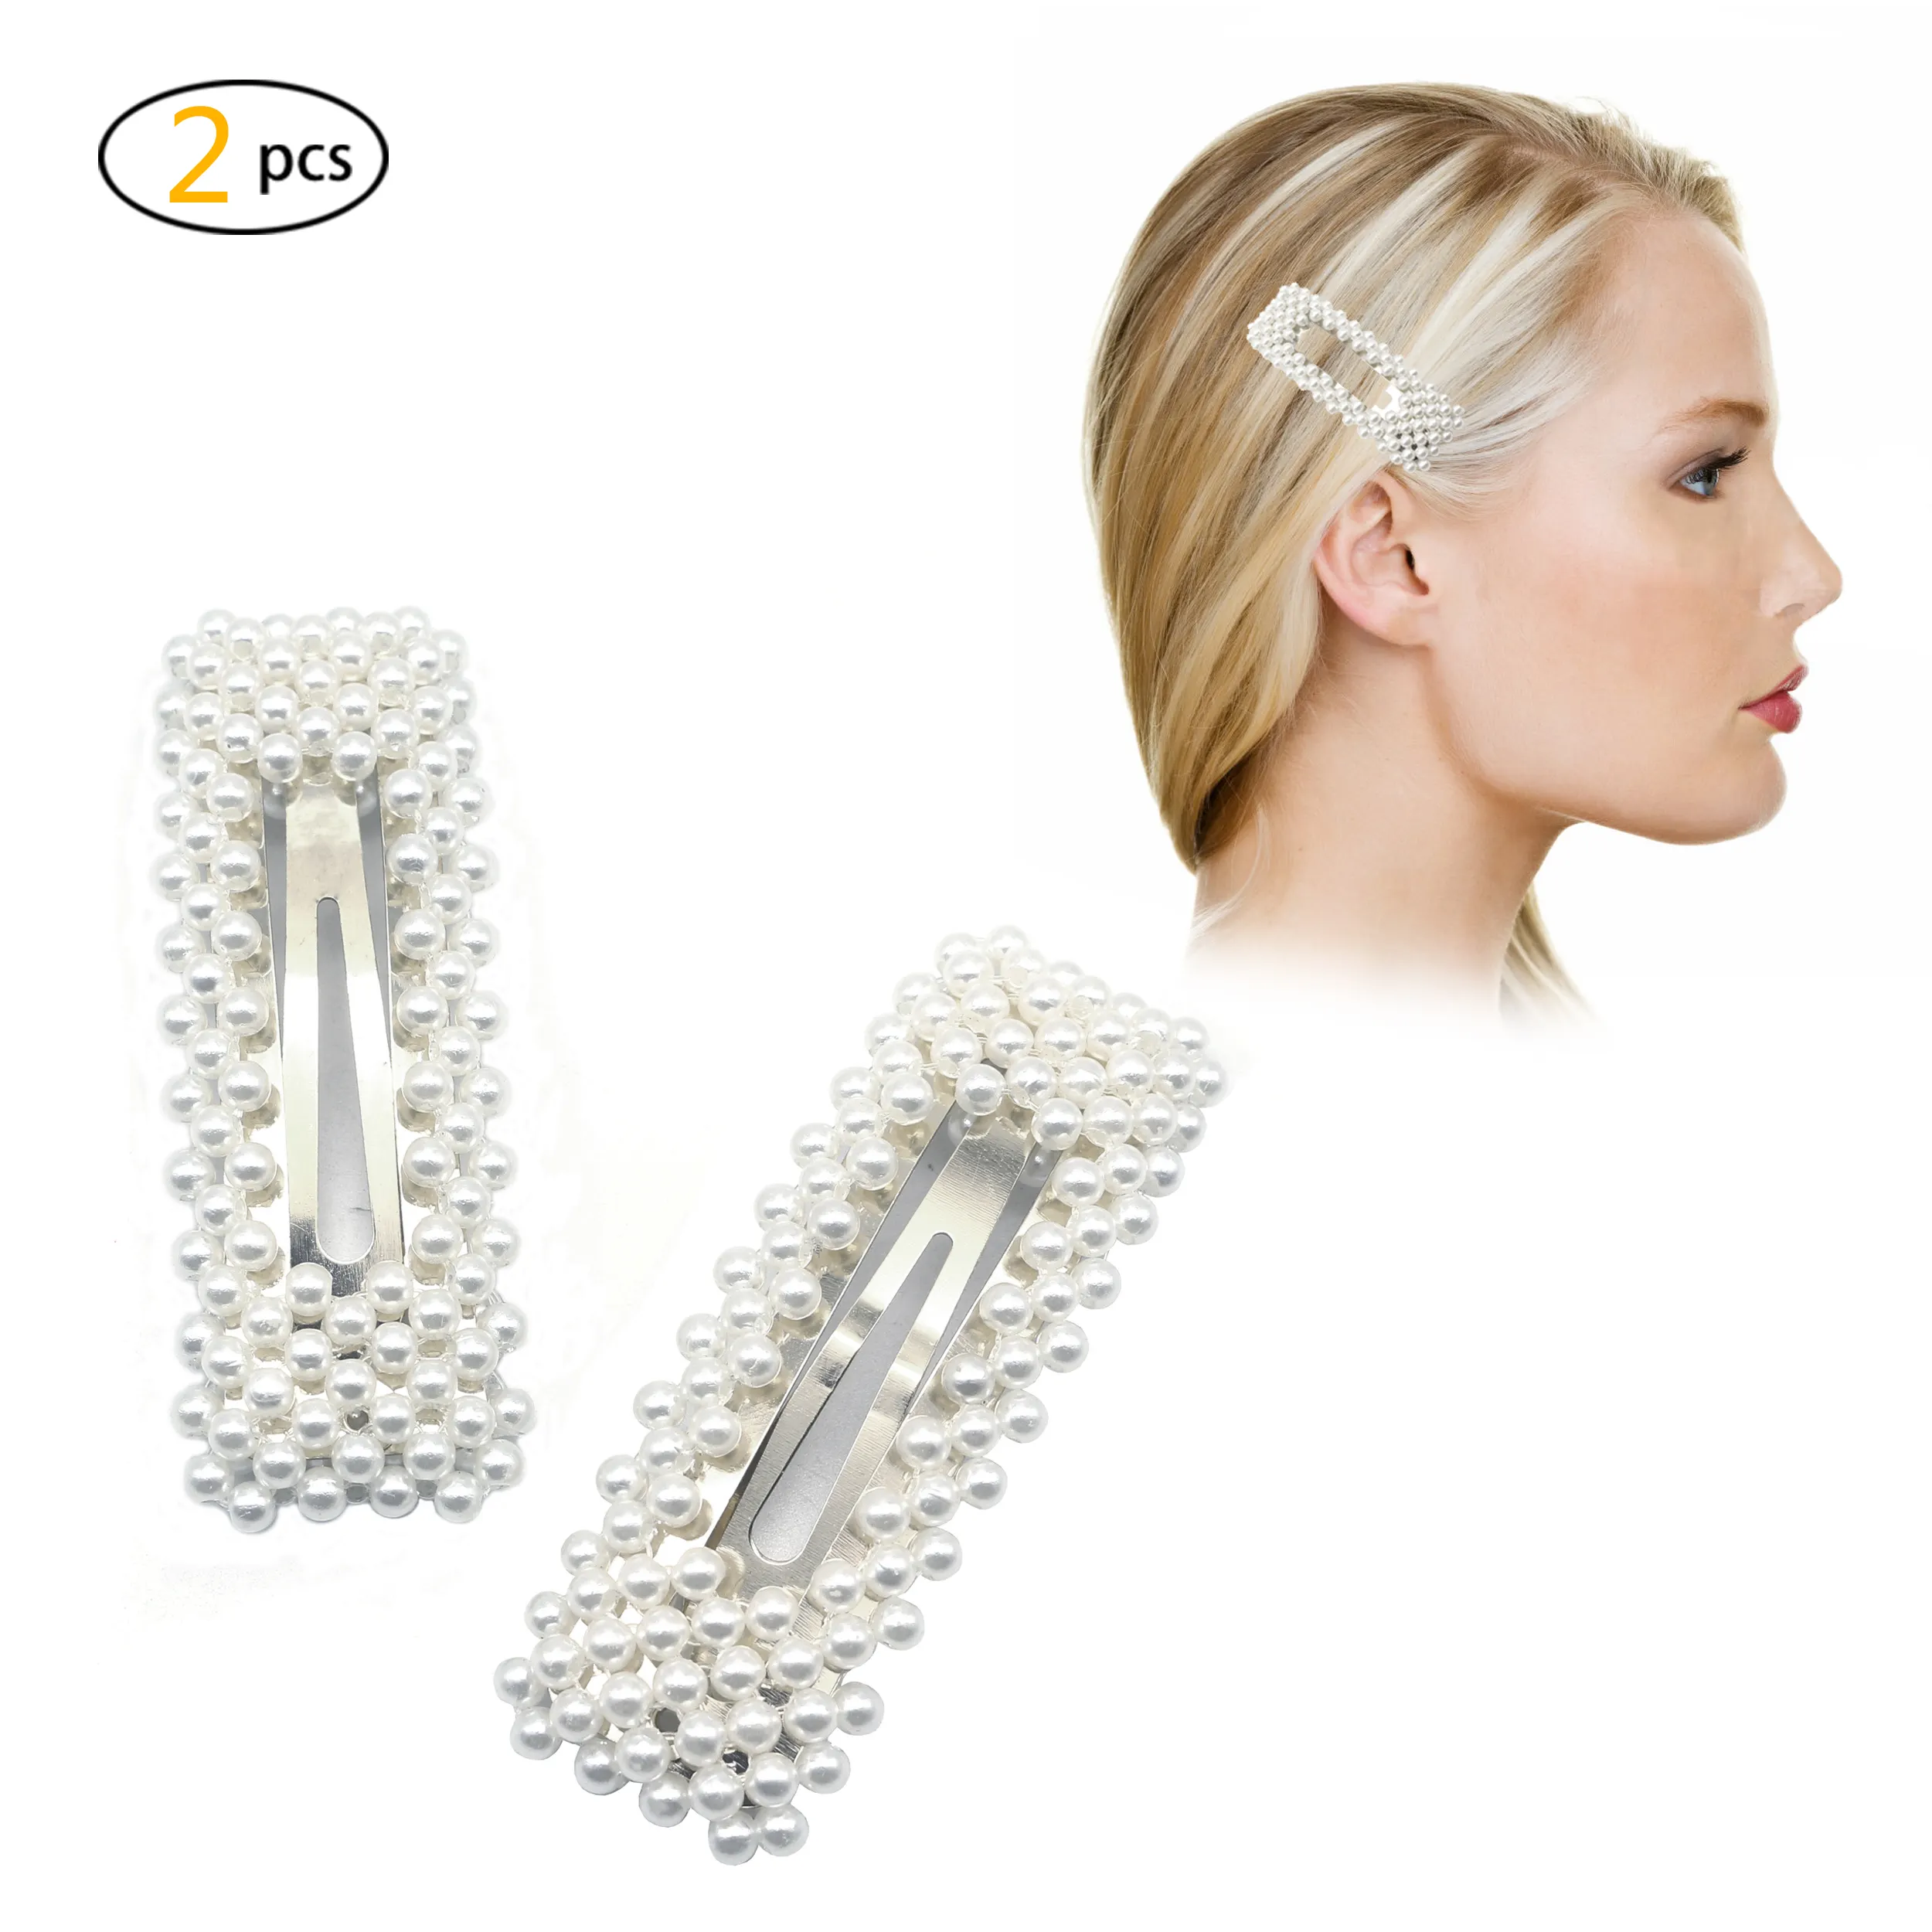 Horquillas de perlas artificiales para boda, con agarre para el pelo, para mujeres y niñas